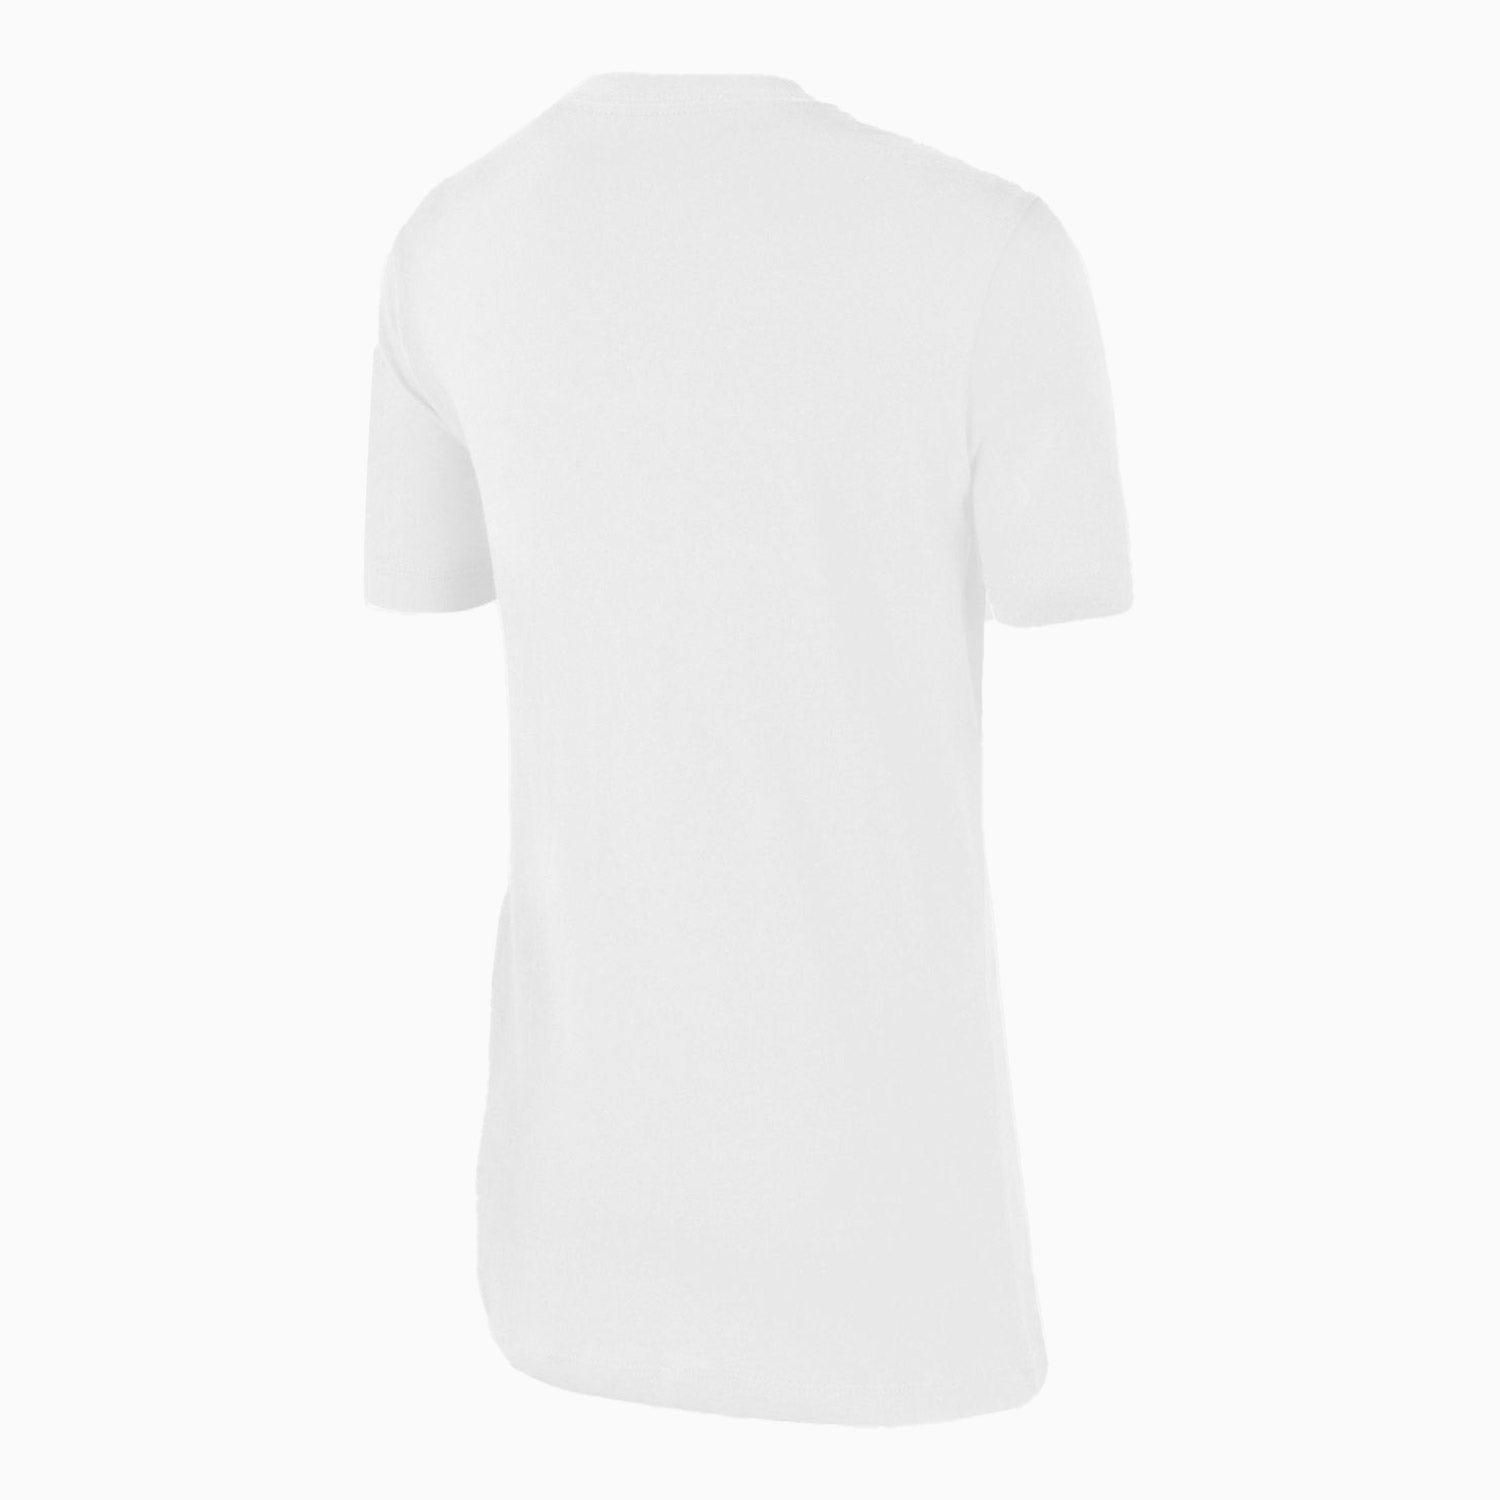 nike-kids-air-short-sleeve-t-shirt-cz1828-100